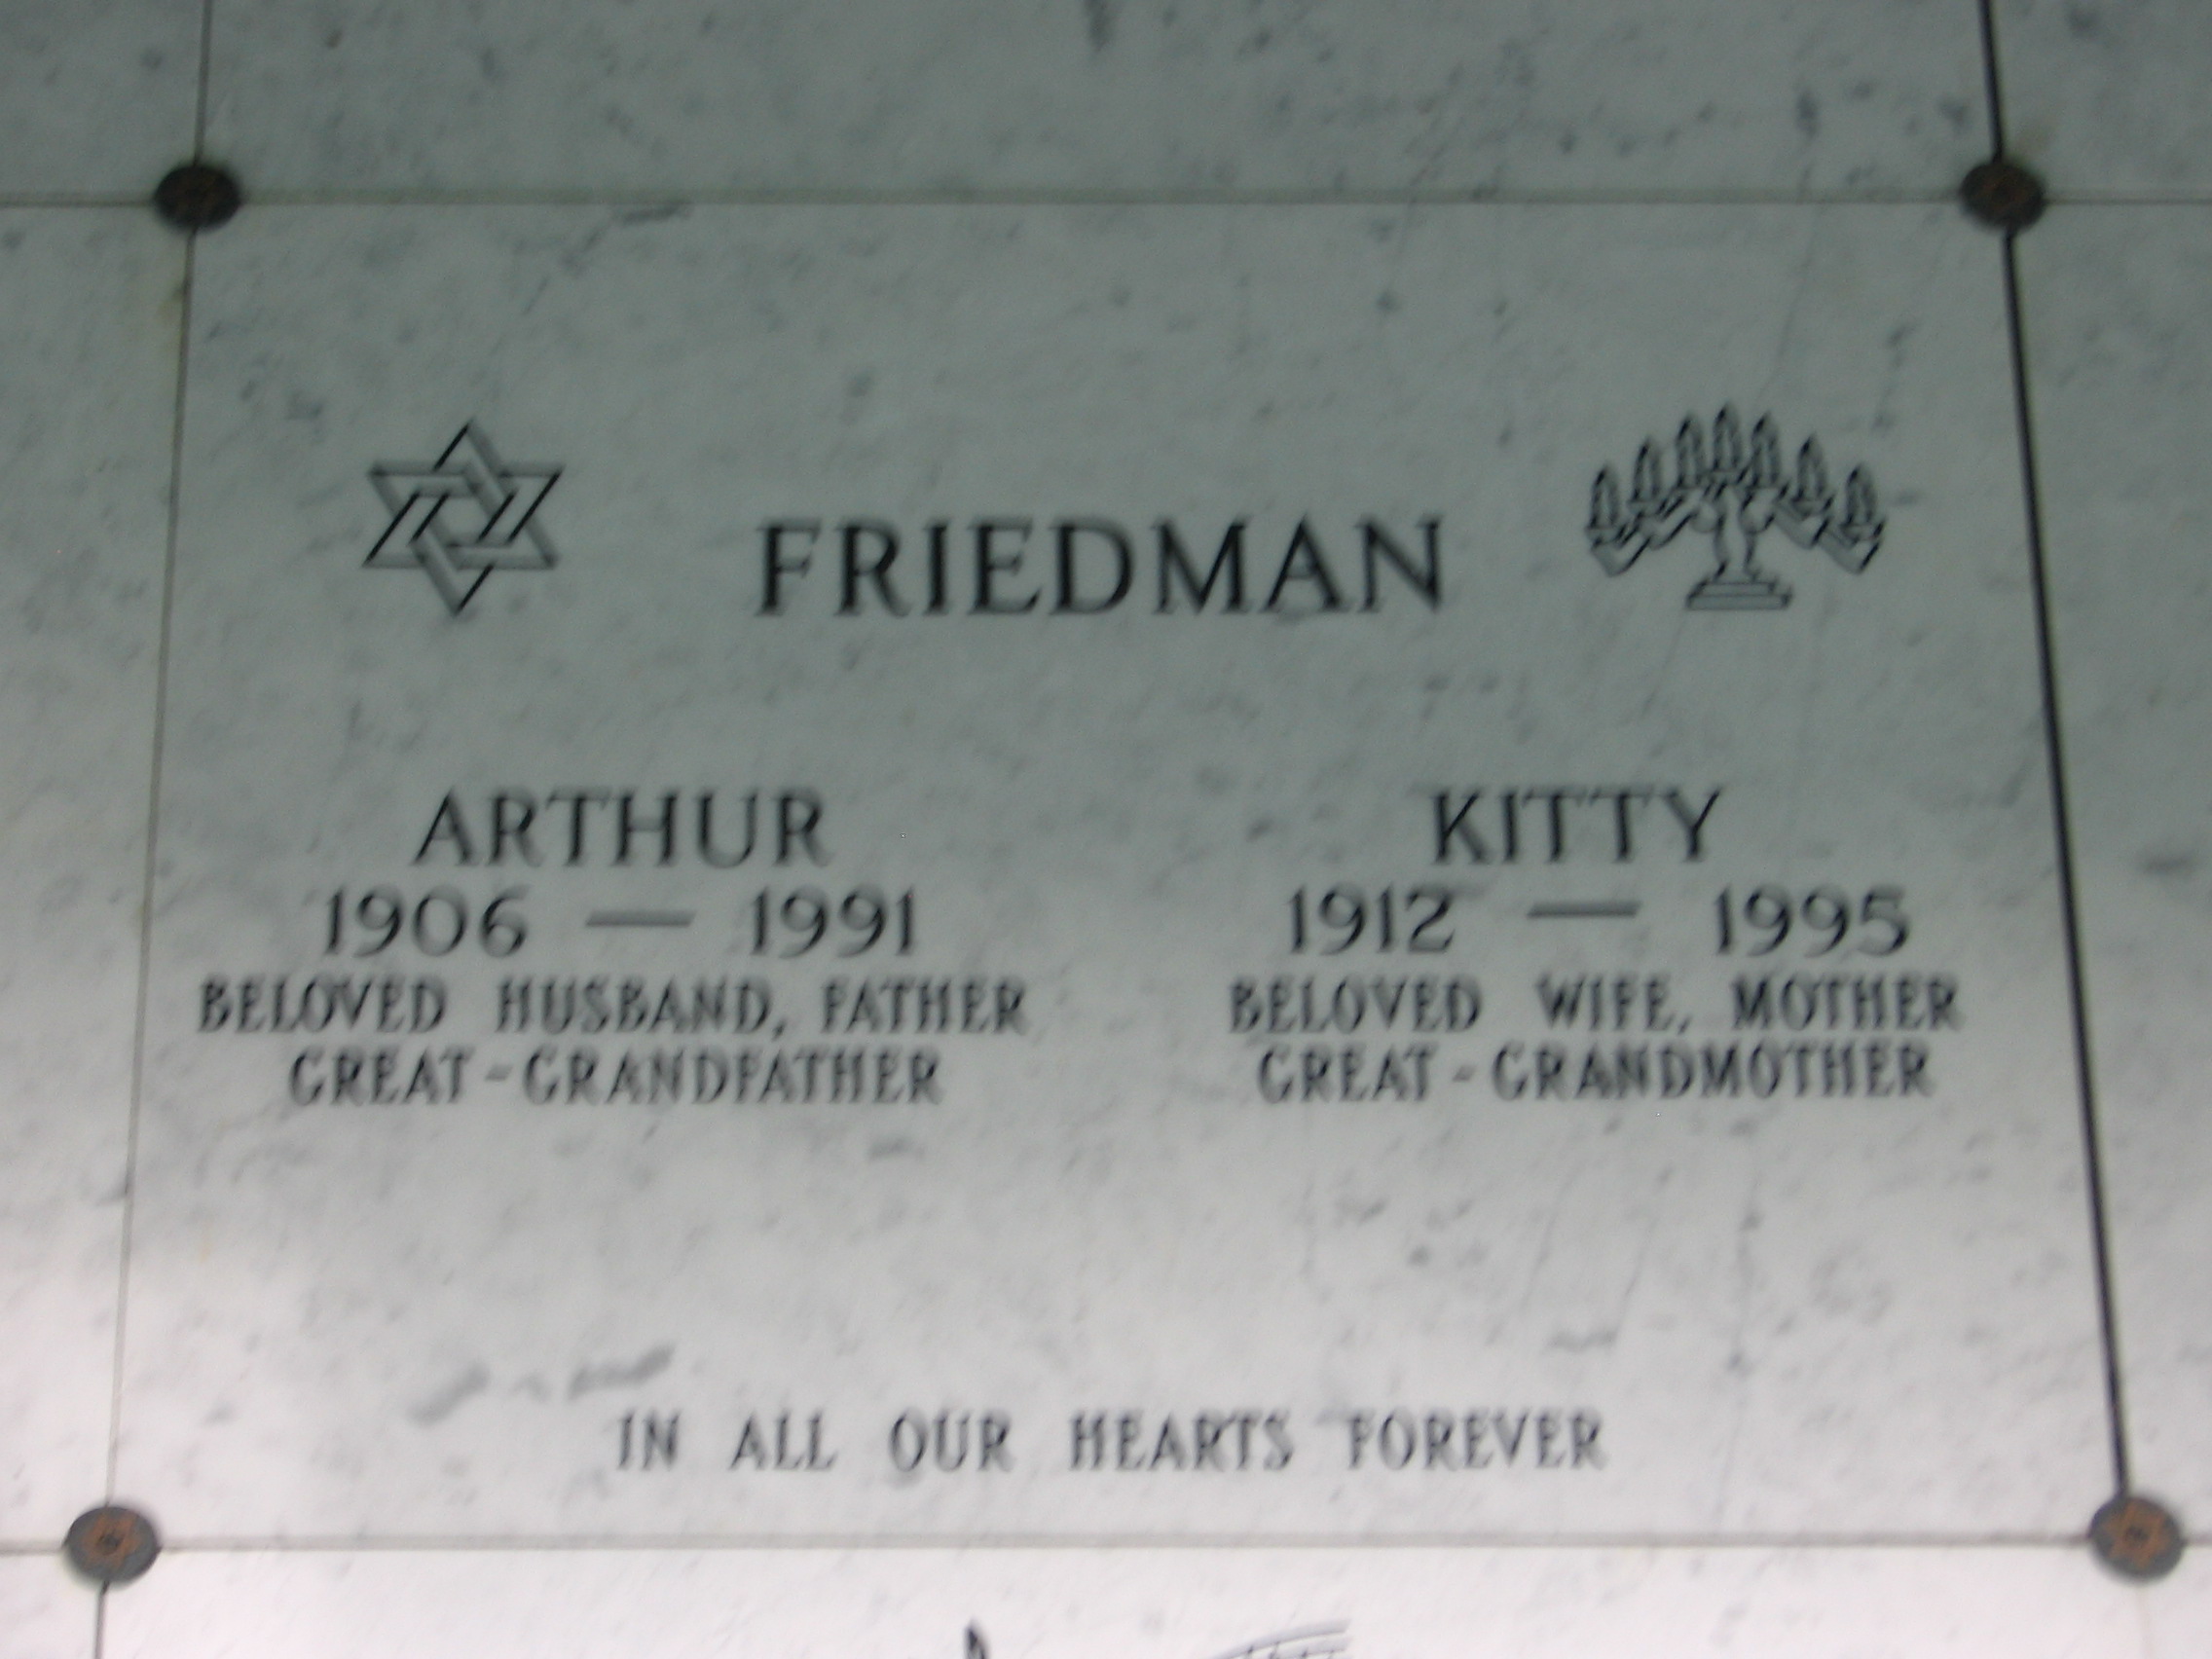 Kitty Friedman